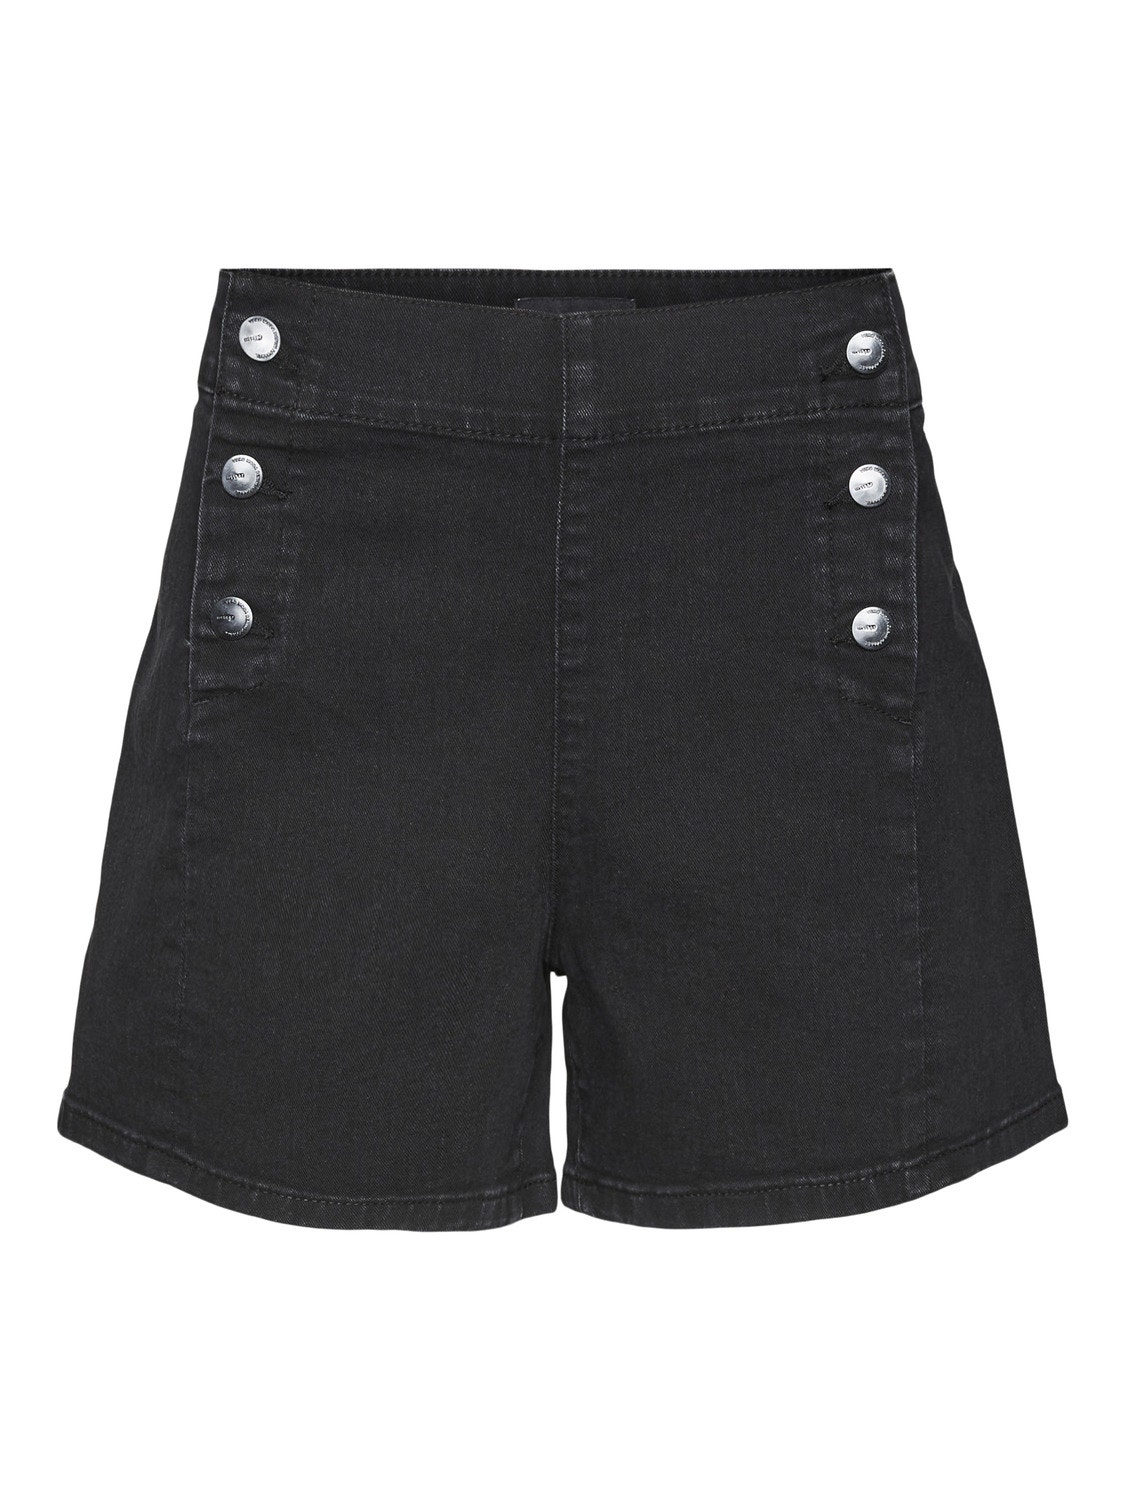 Vero Moda VMKAYLA Shorts -Black - 10307726